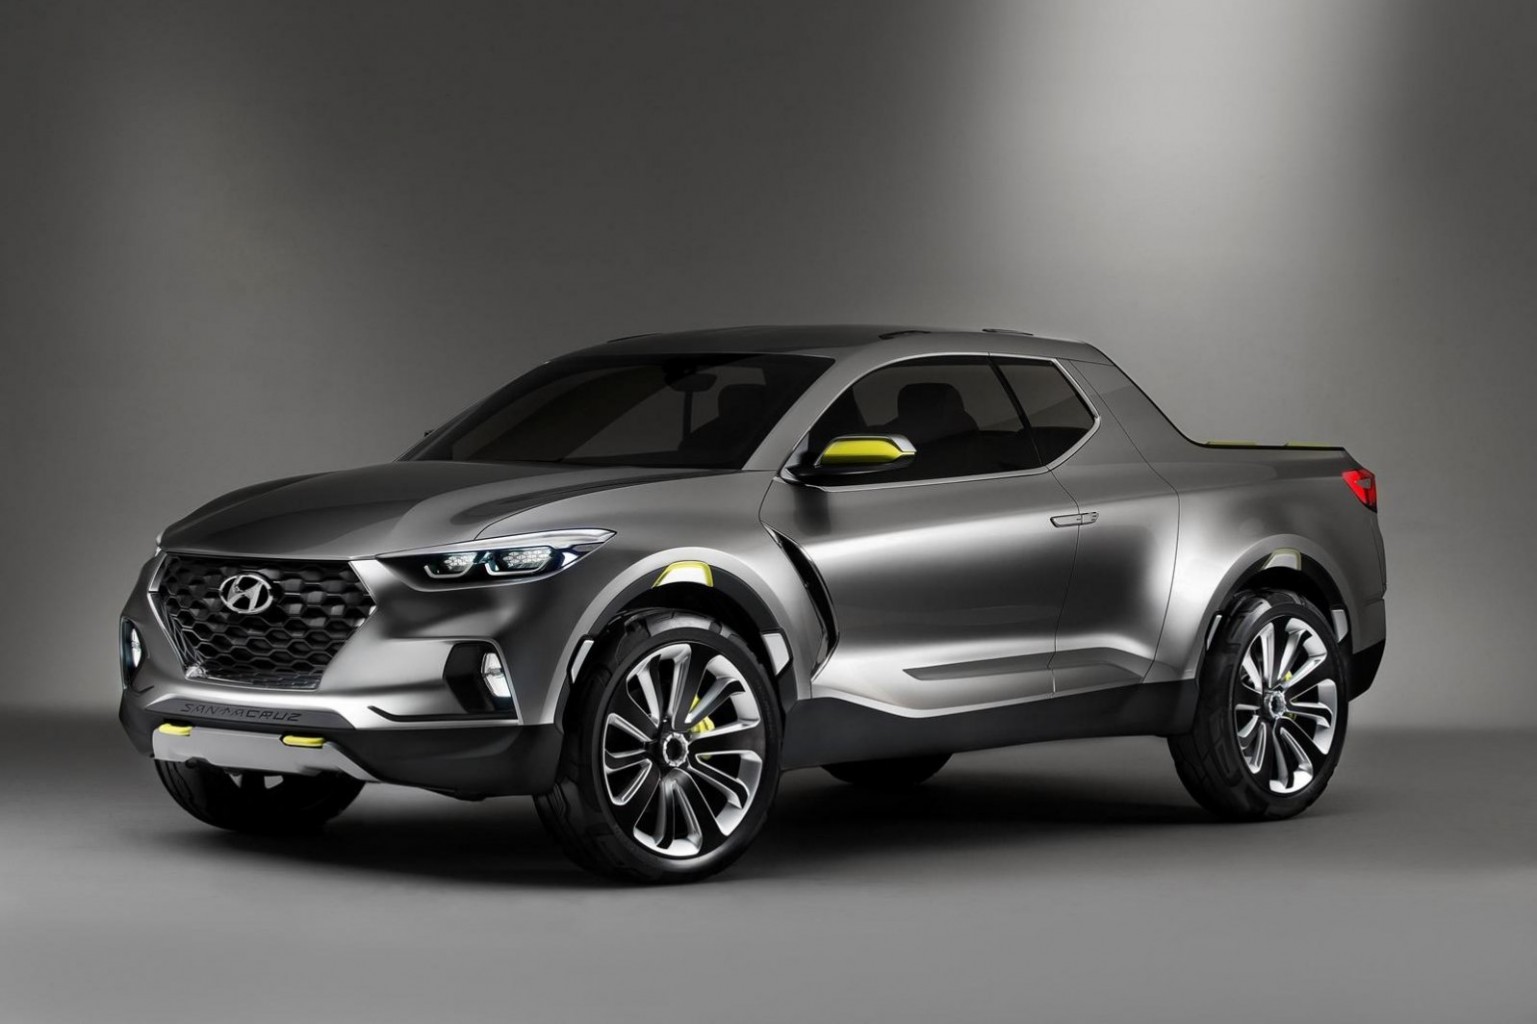 Hyundai asegura que la pick up Santa Cruz saldrá a la venta entre el 2020 y el 2021